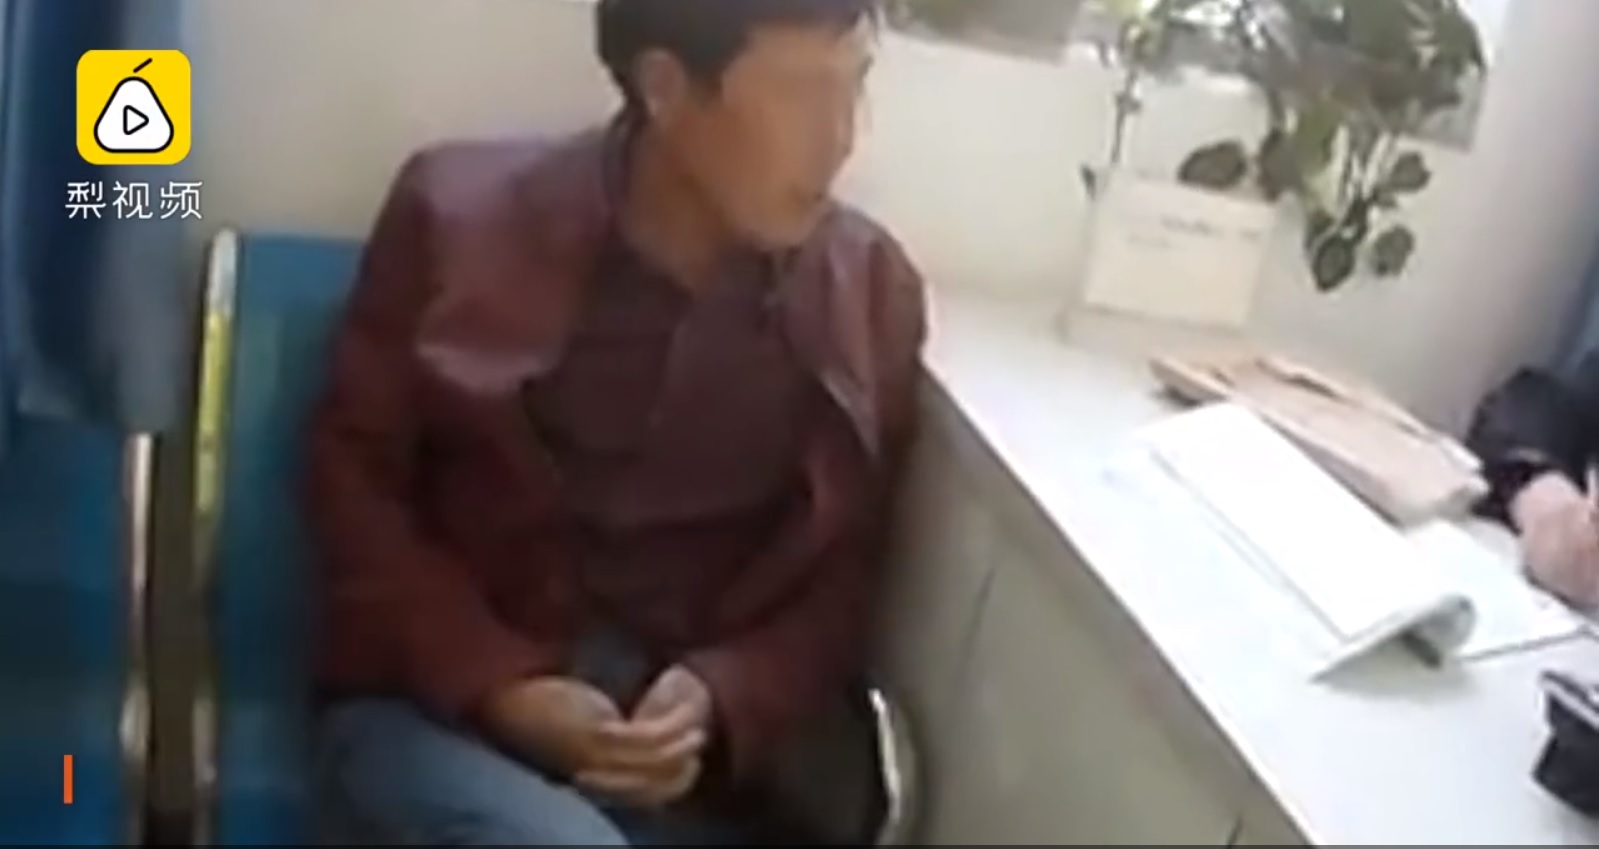 в Китае скрывавшегося 13 лет убийцу арестовали из-за отсутствия шлема